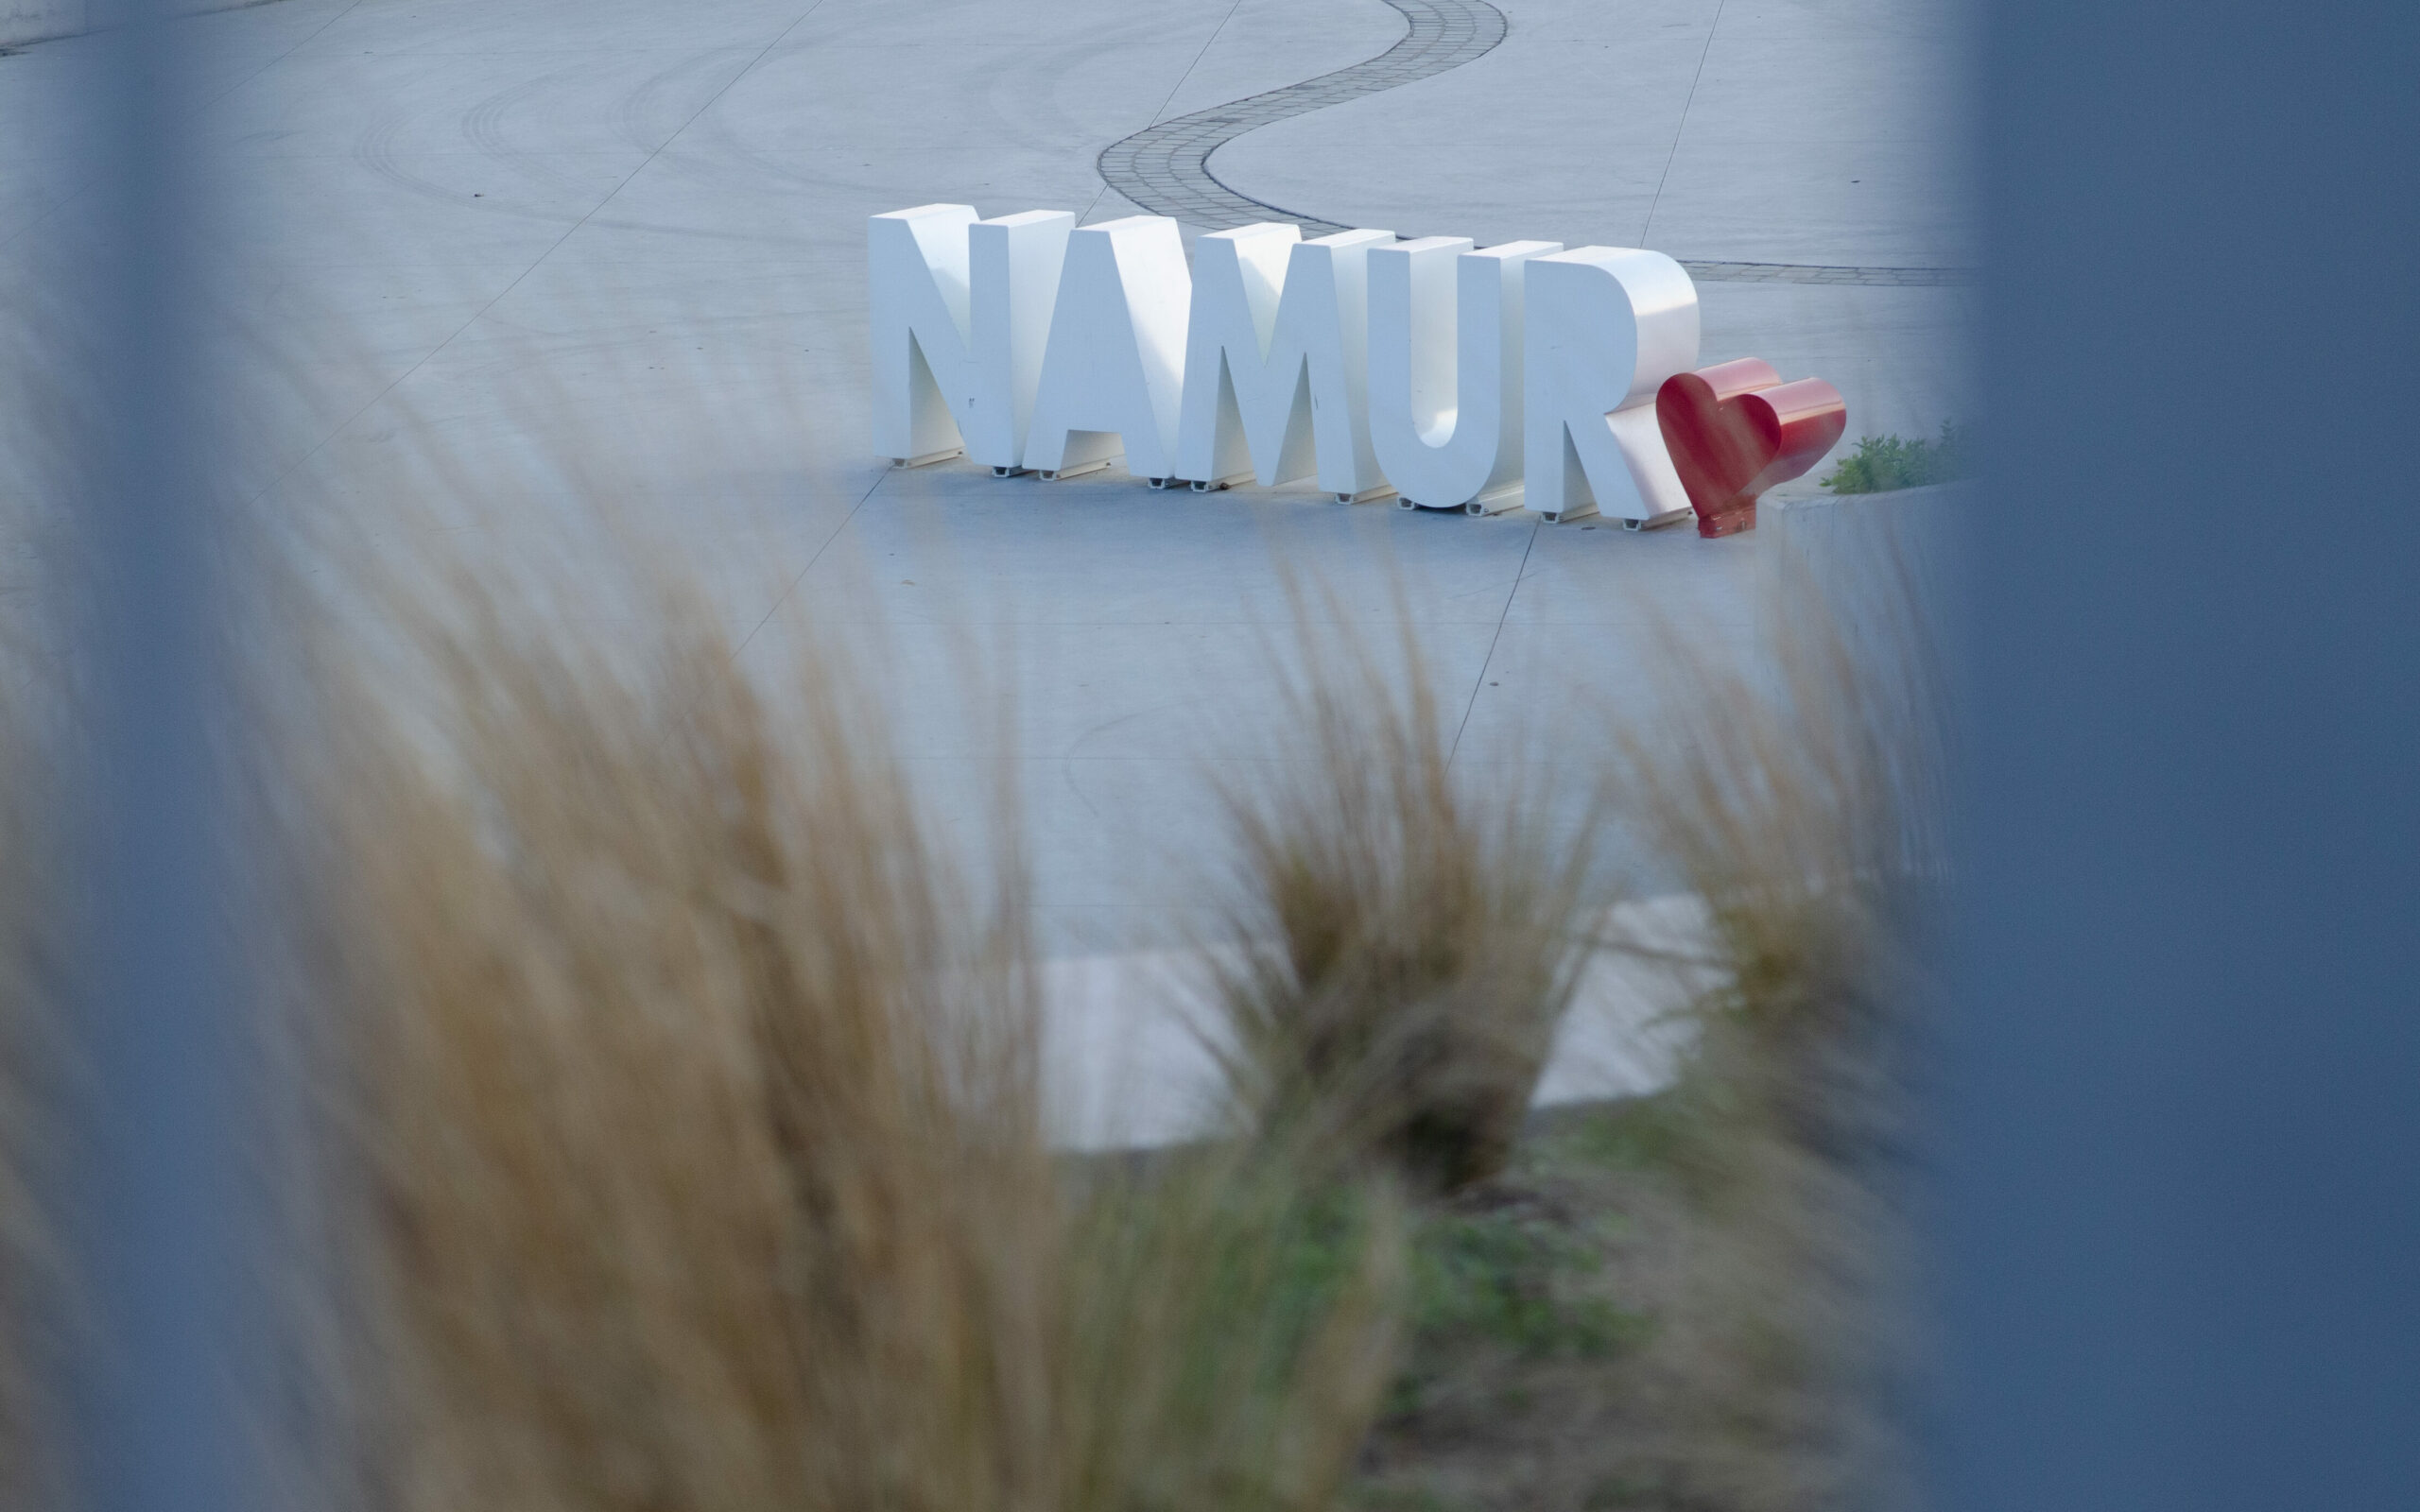 Namur - 2